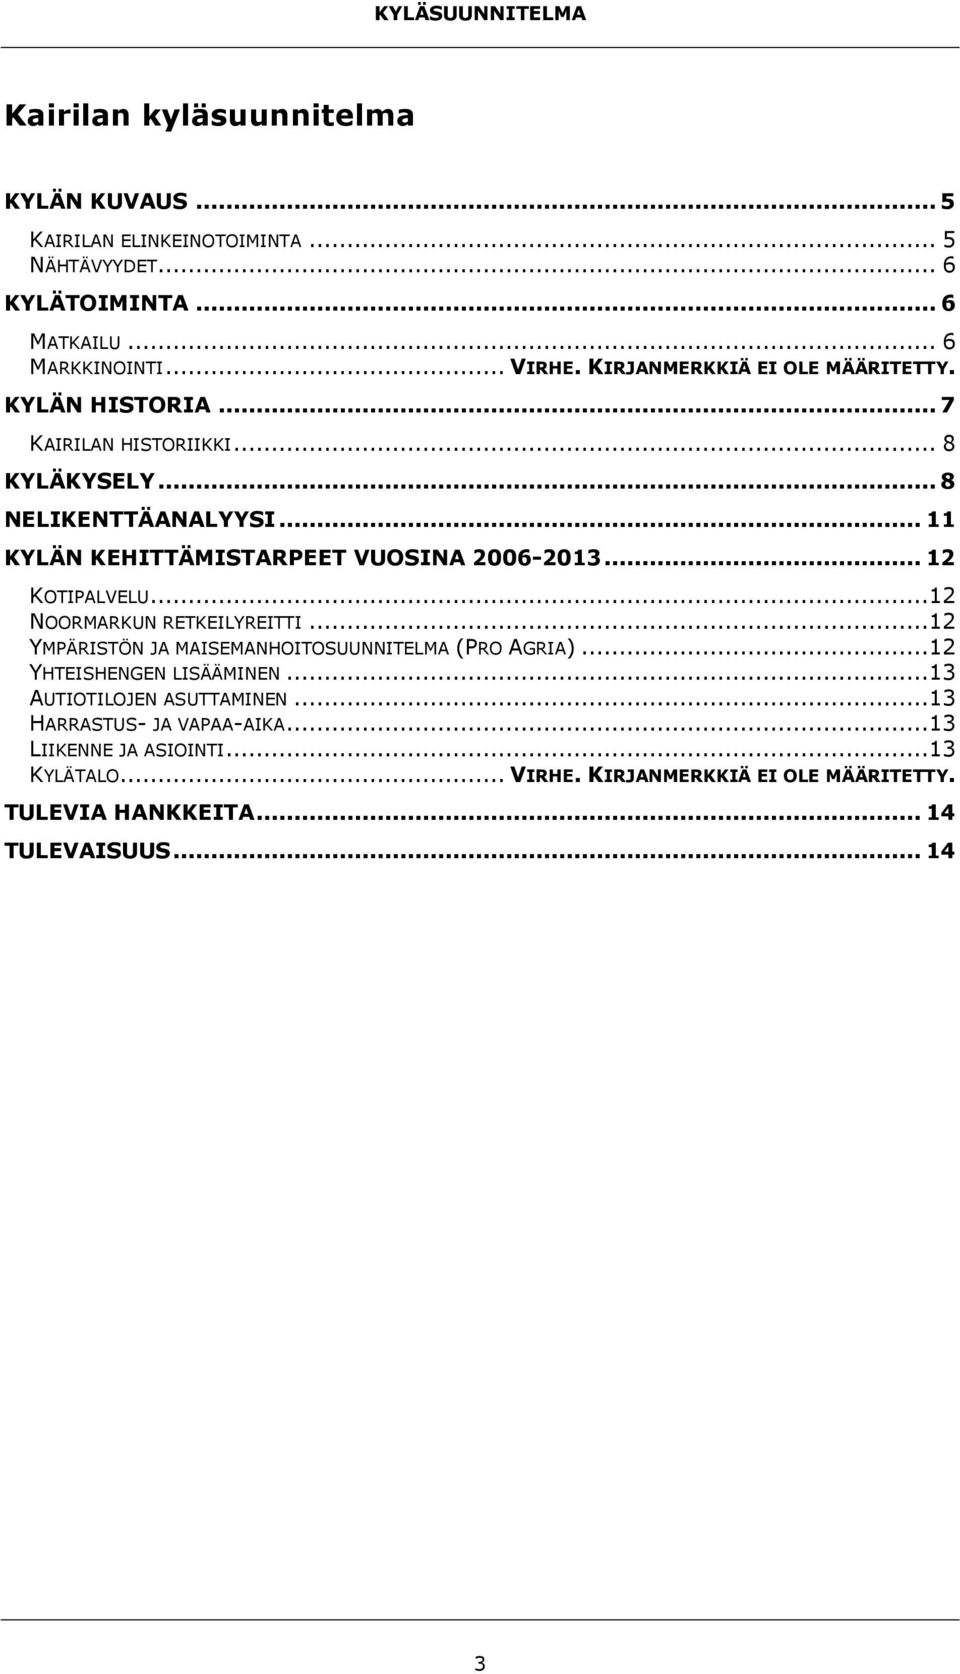 .. 11 KYLÄN KEHITTÄMISTARPEET VUOSINA 2006-2013... 12 KOTIPALVELU...12 NOORMARKUN RETKEILYREITTI...12 YMPÄRISTÖN JA MAISEMANHOITOSUUNNITELMA (PRO AGRIA).